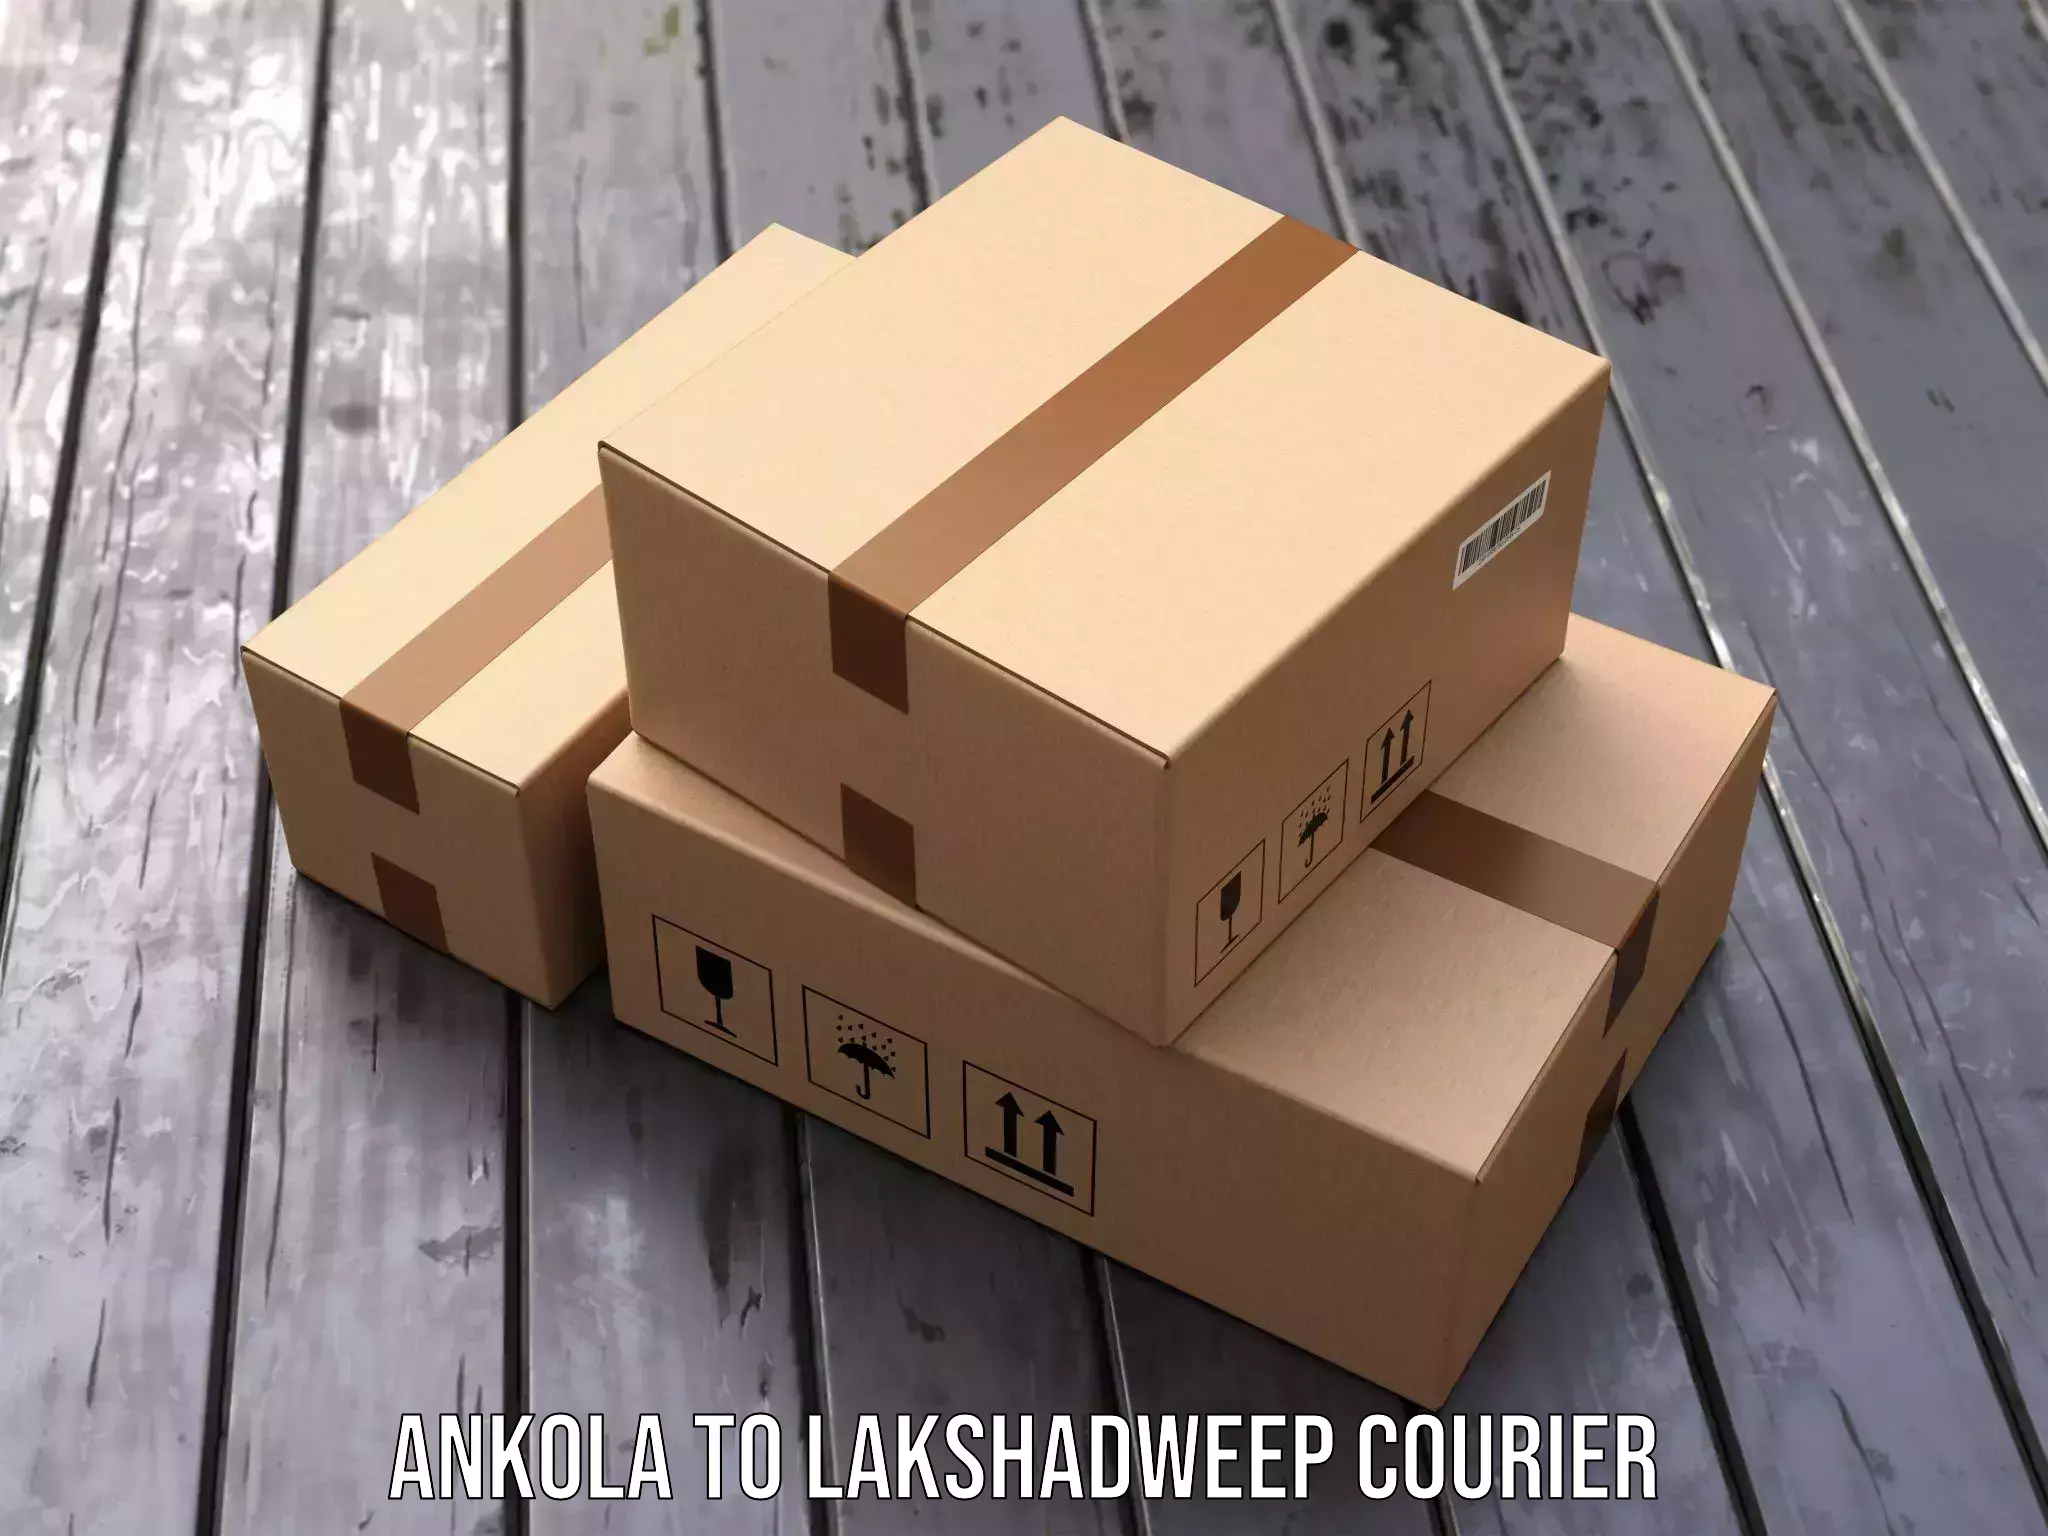 Express courier facilities Ankola to Lakshadweep